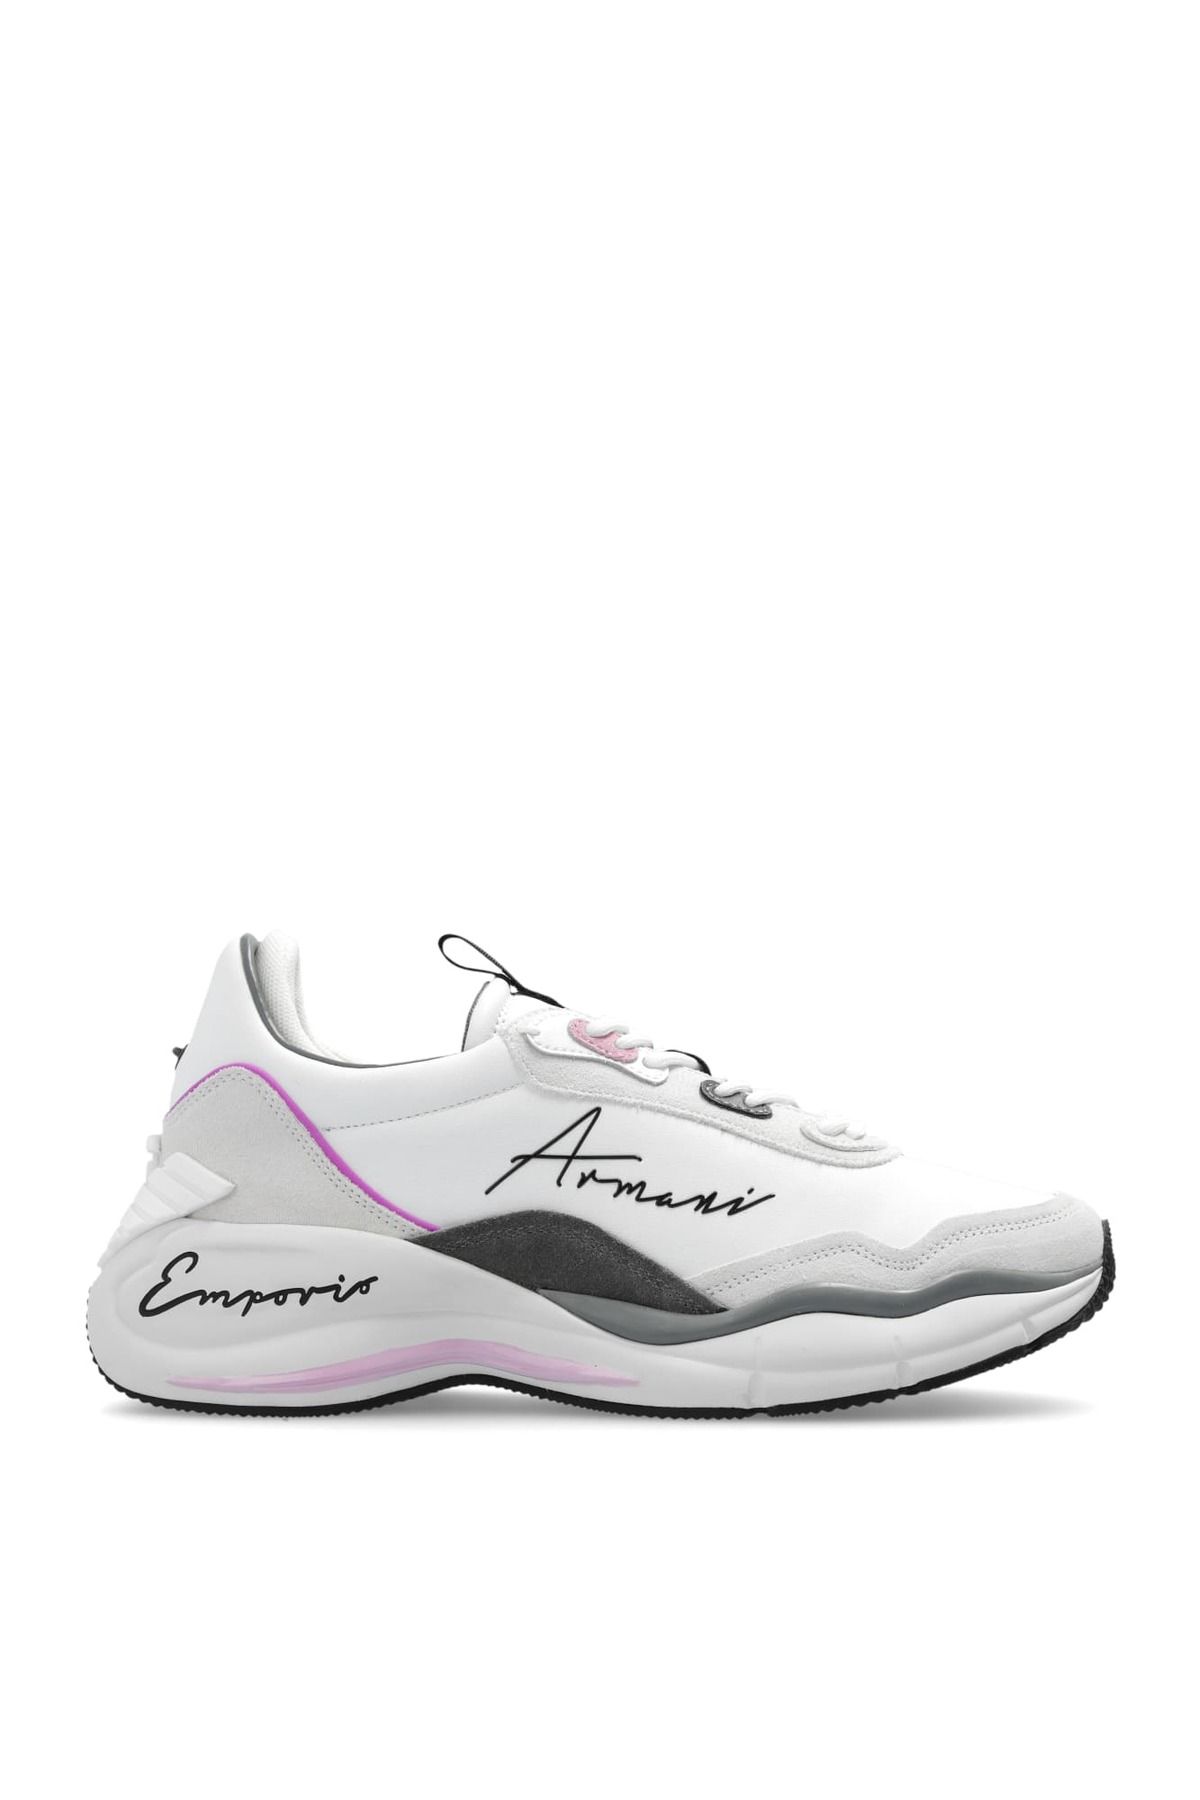 Emporio Armani Kadın Marka Logolu Bağcıklı Kaydırmaz Tabanlı Günlük Beyaz Sneaker X3X215 XR120-C673